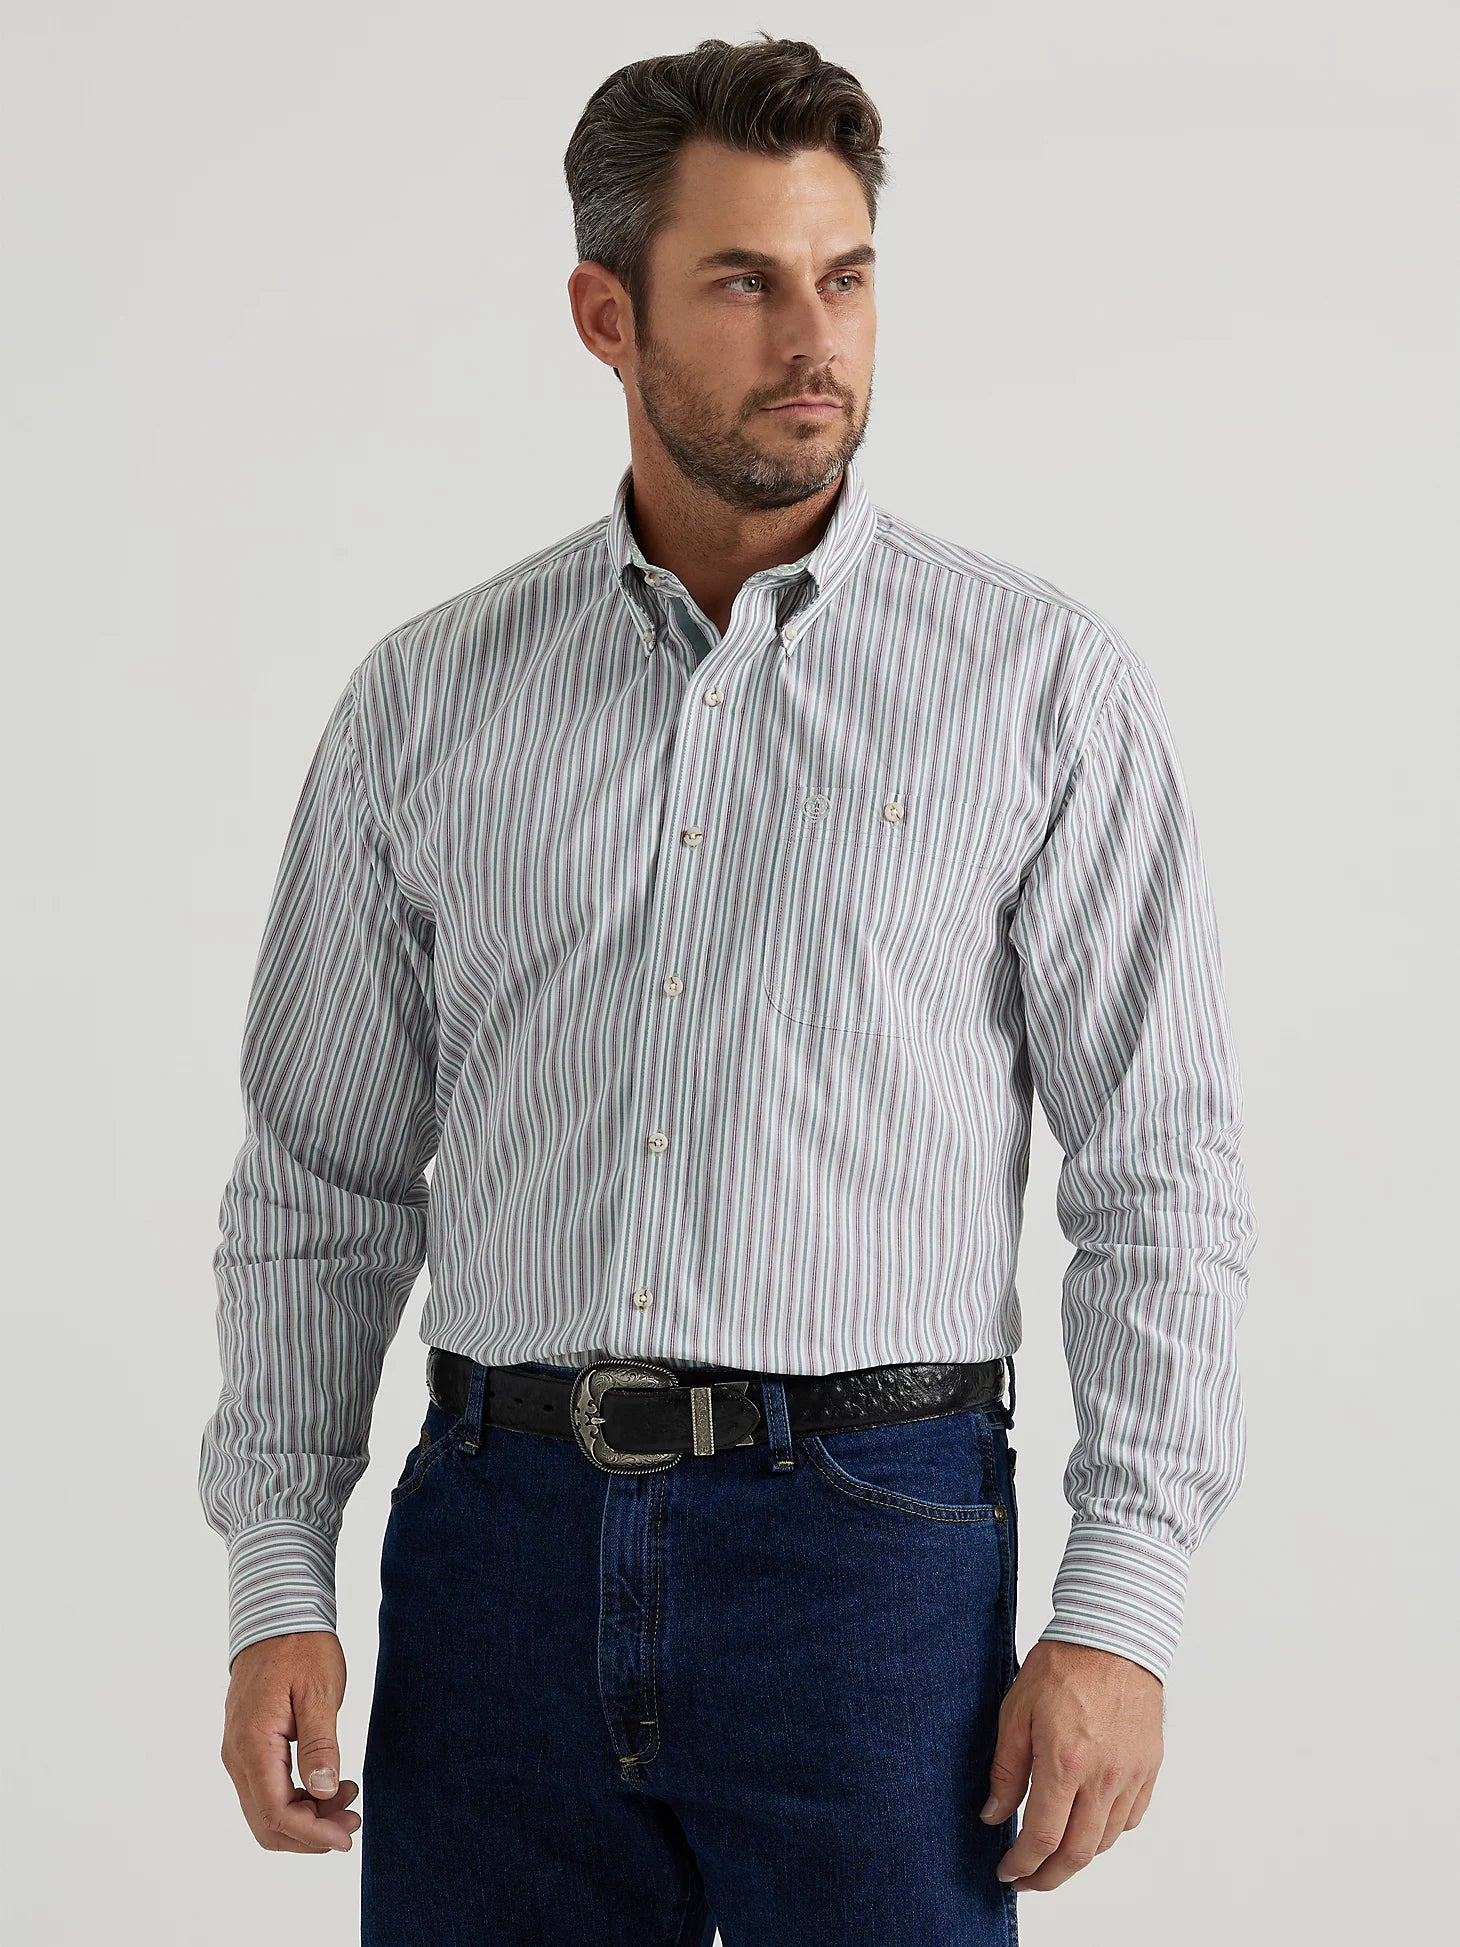 Men's Wrangler George Strait Long Sleeve Shirt STYLE 112346529